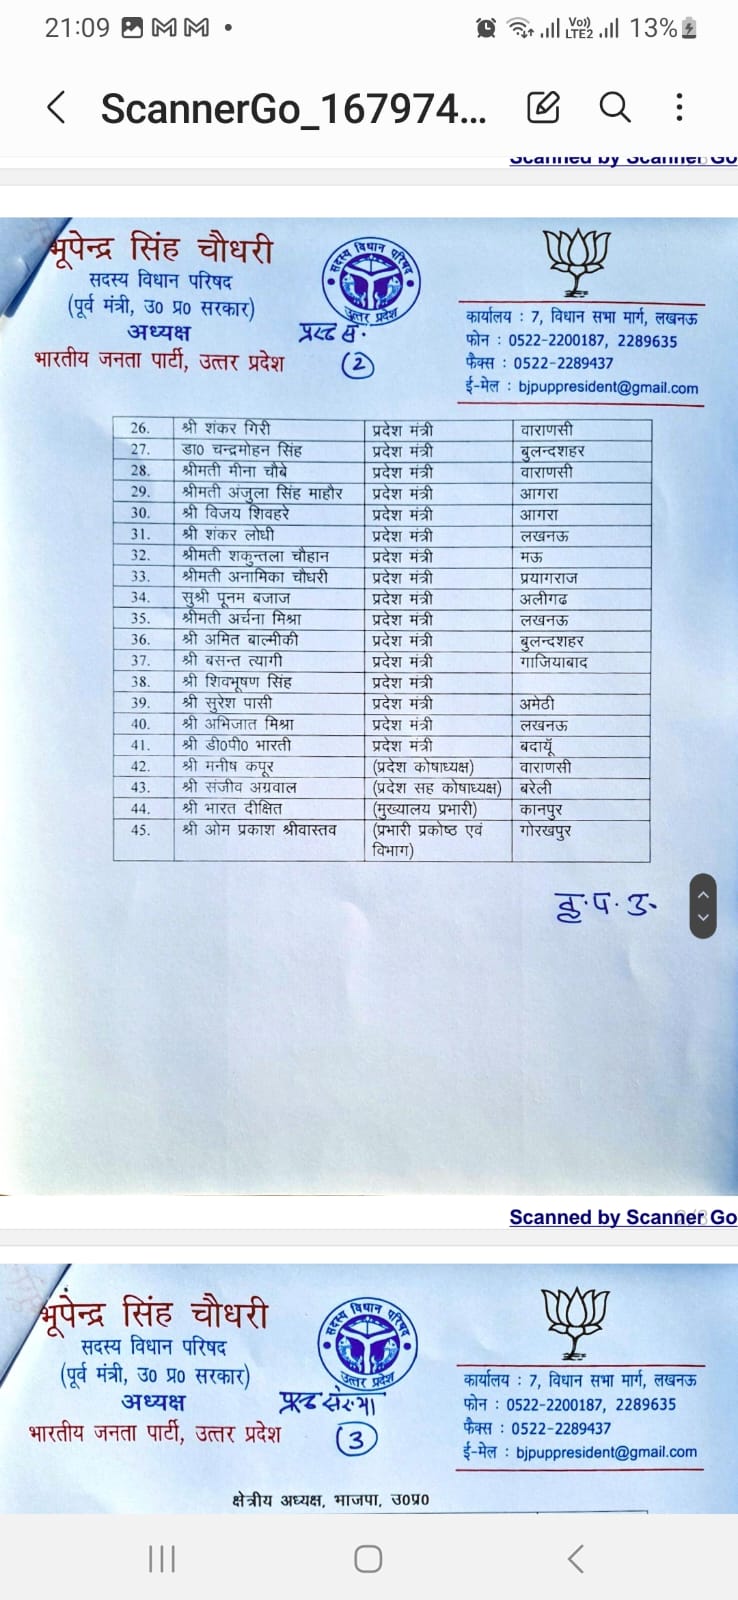 भाजपा के प्रमुख प्रदेश पदाधिकारियों की सूची .